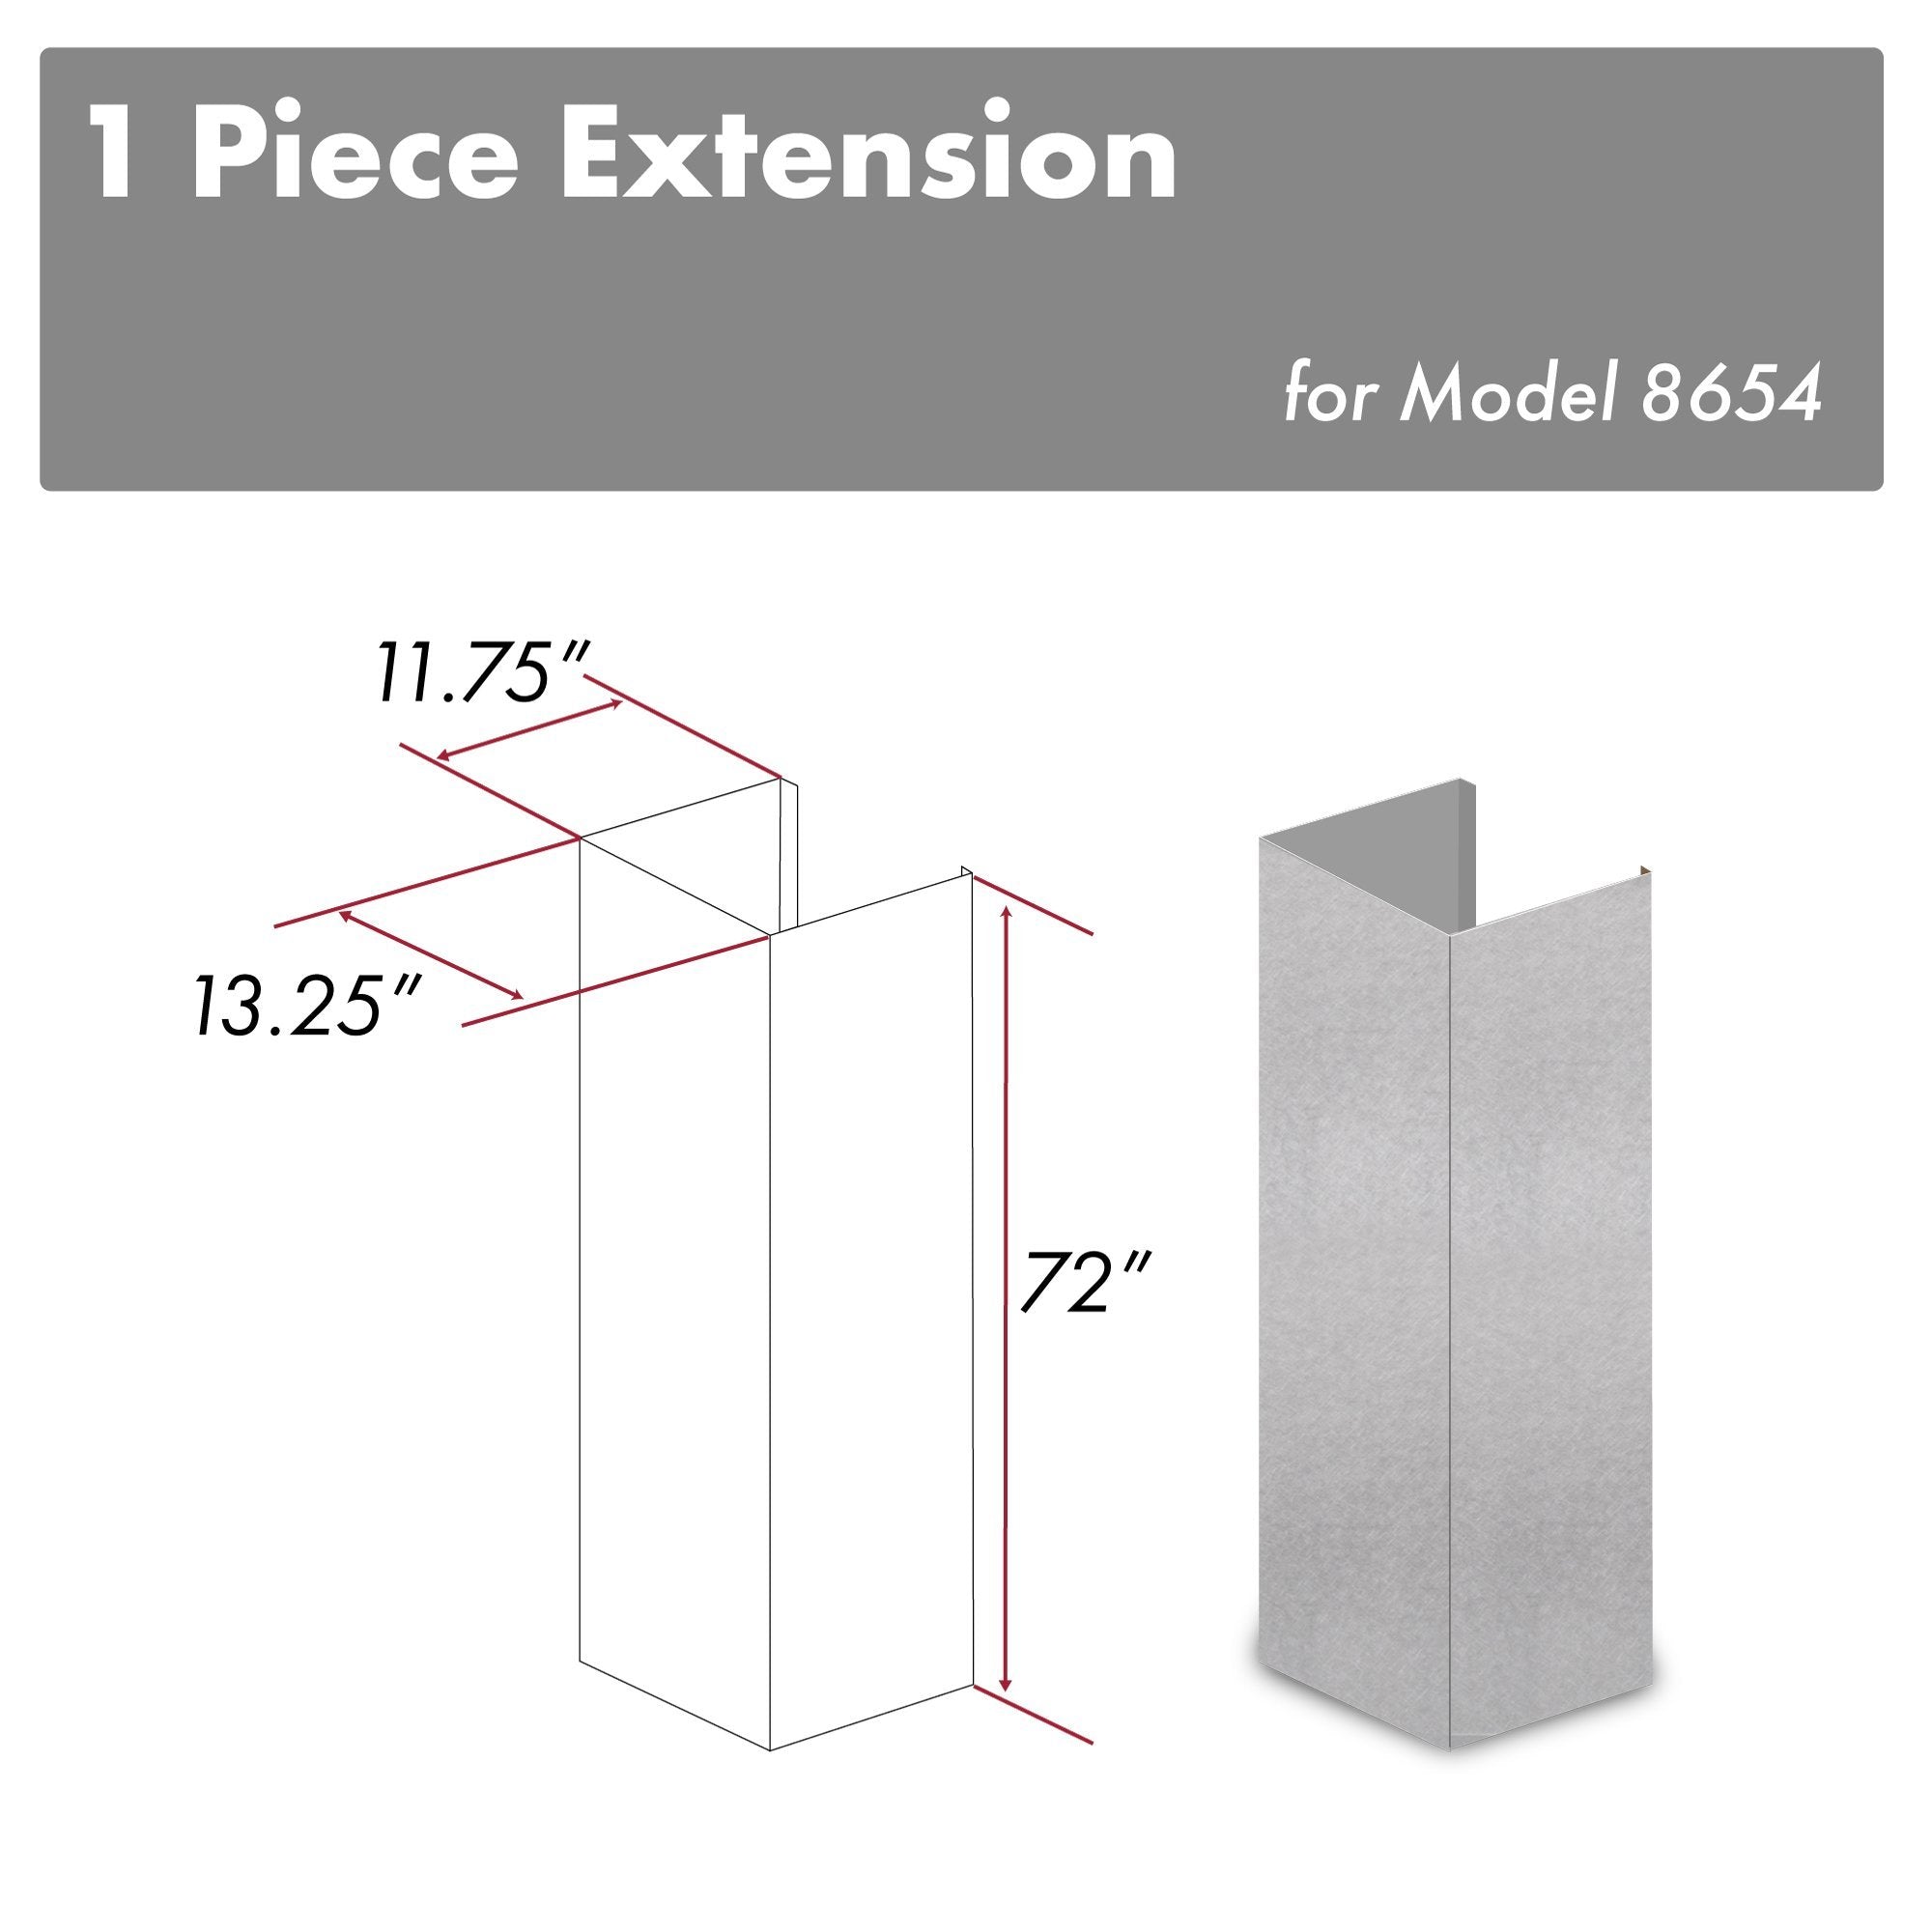 ZLINE 72 in. DuraSnow® Stainless Steel Extended Chimney for 12.5ft Ceiling (8654-E)